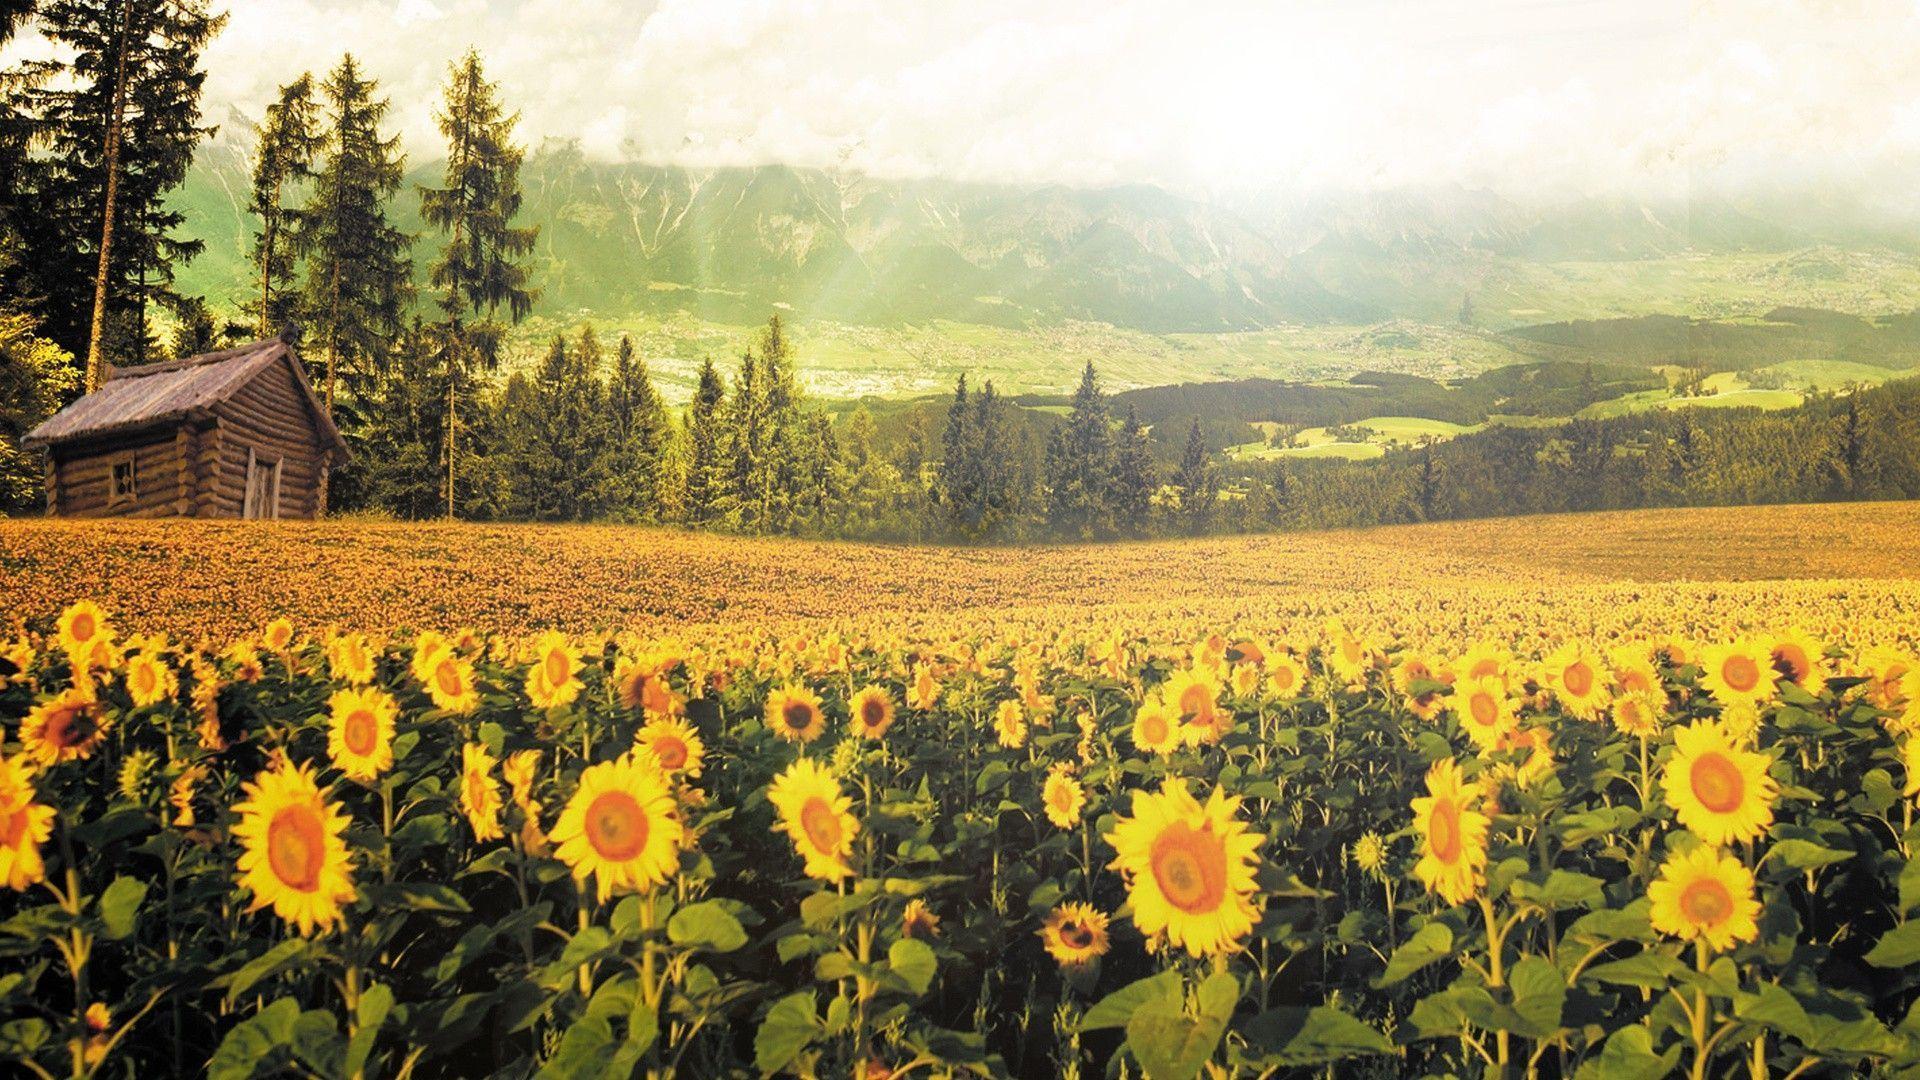 Sunflowers Wallpapers sẽ làm cho màn hình của bạn trở nên sáng tạo và đầy năng lượng. Với những bông hoa hướng dương to lớn và phong cảnh tuyệt đẹp, những hình nền này sẽ giúp cho bạn cảm thấy tràn đầy sức sống và niềm vui.